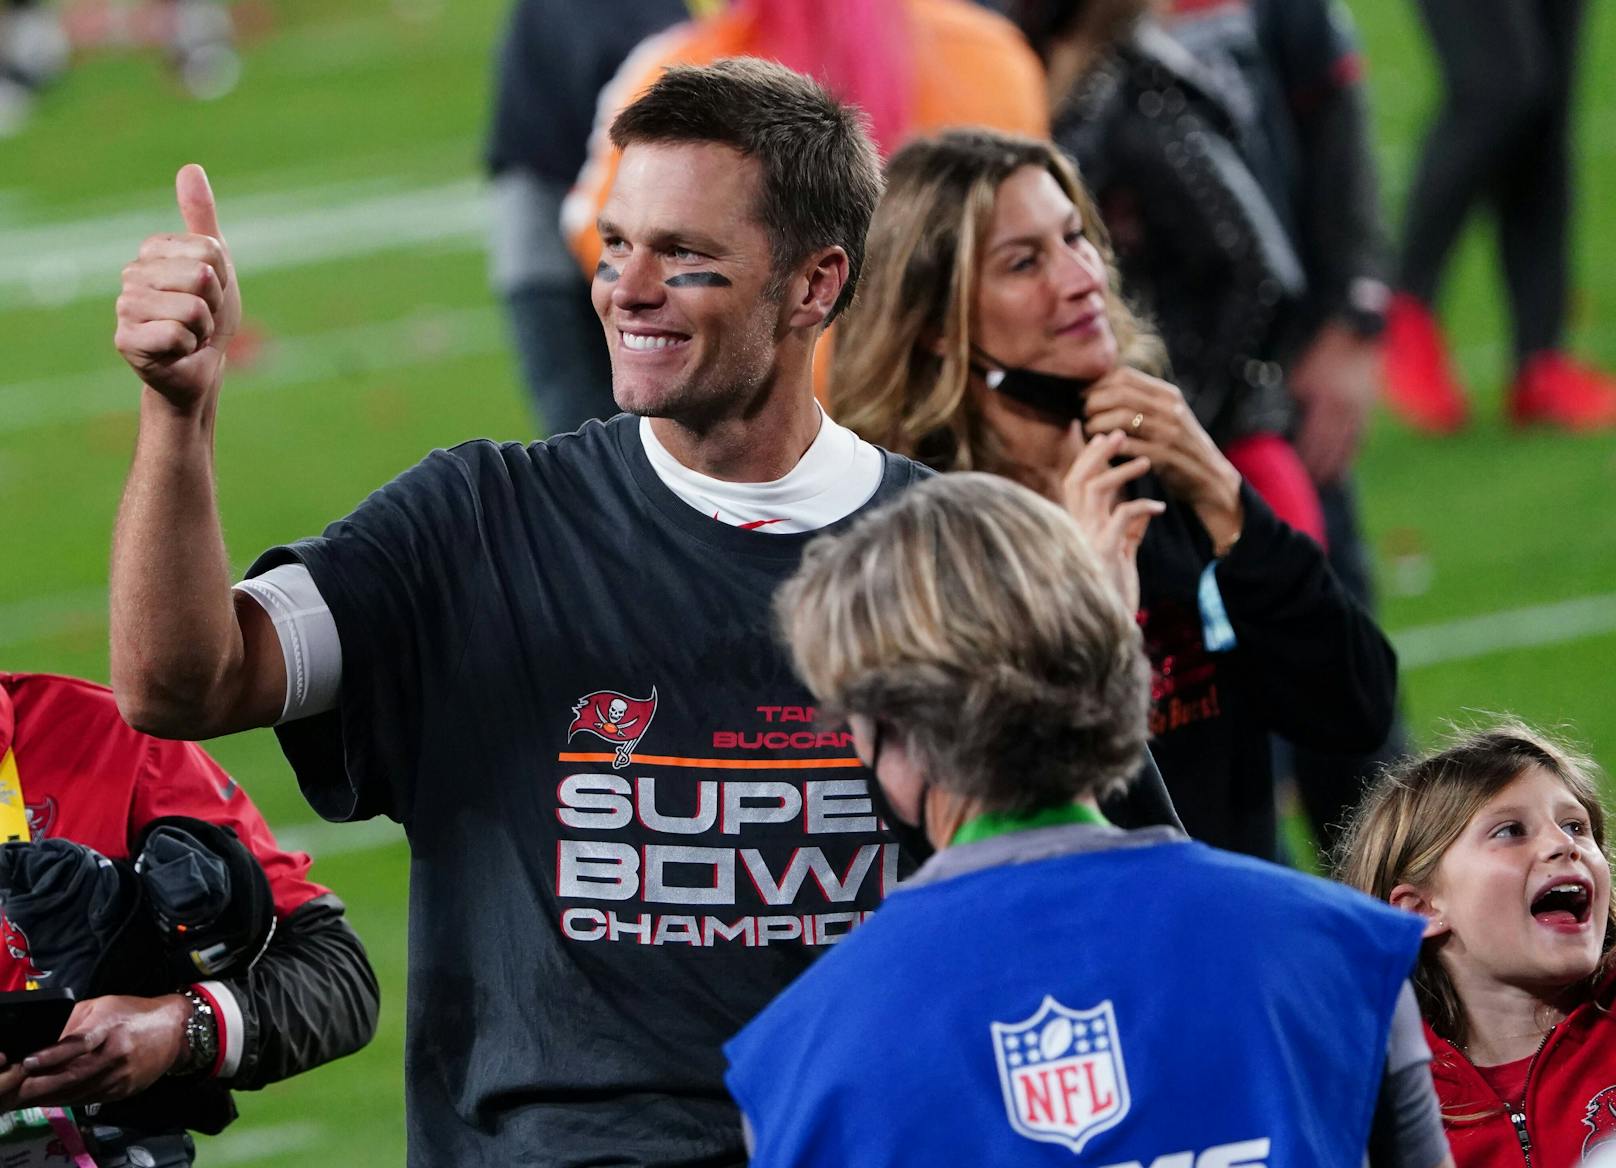 NFL-Legende Brady legt Kriterien für neue Freundin fest